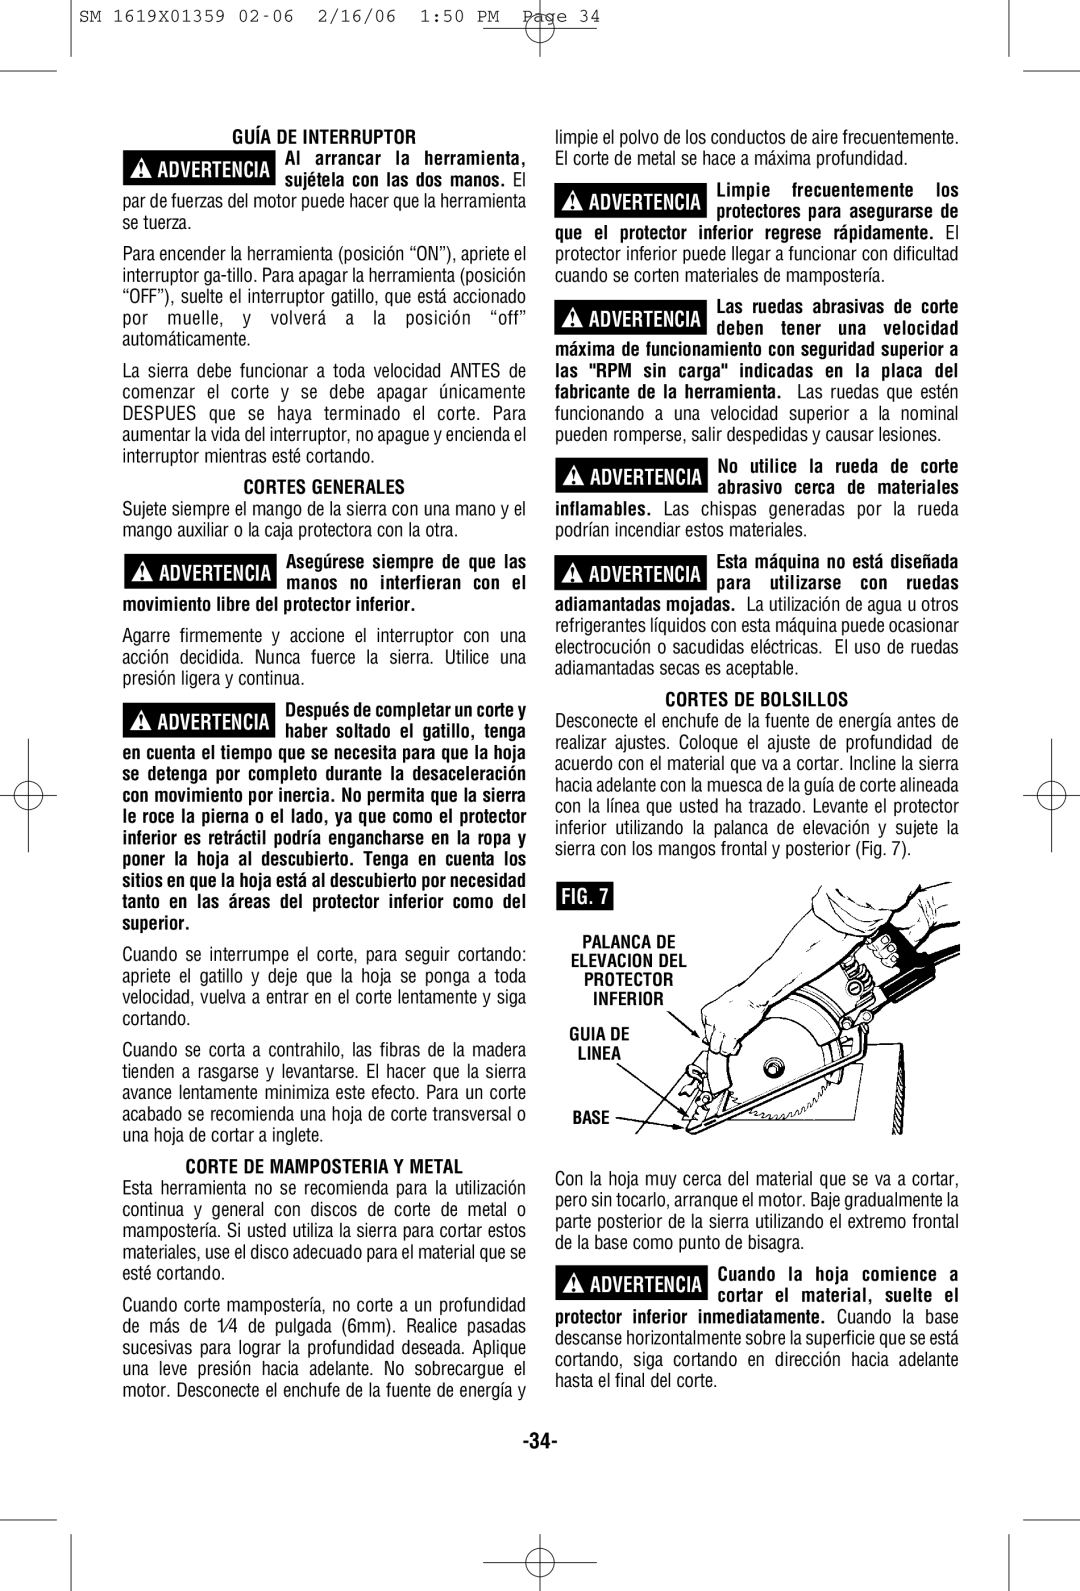 Skil HD5860 Guía De Interruptor, Cortes Generales, movimiento libre del protector inferior, Corte De Mamposteria Y Metal 